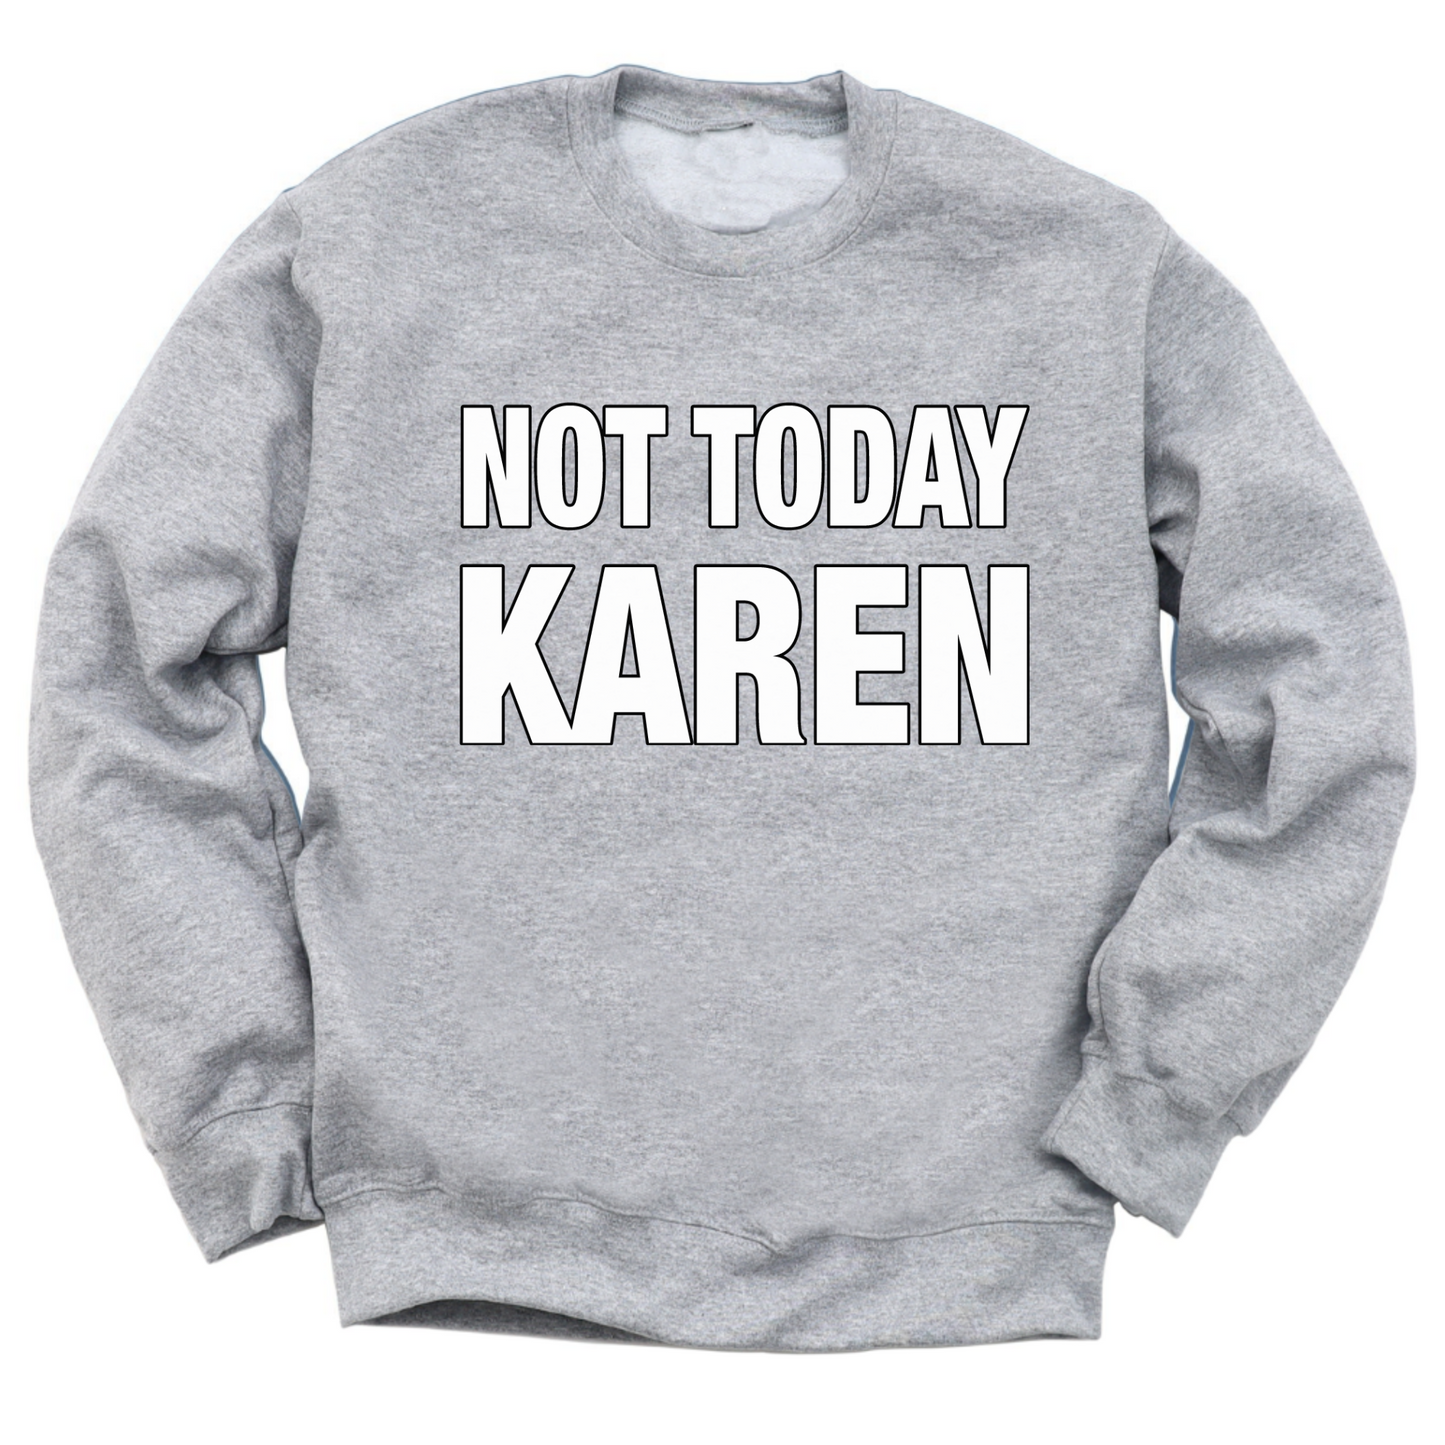 Not Today Karen Crewneck Sweater